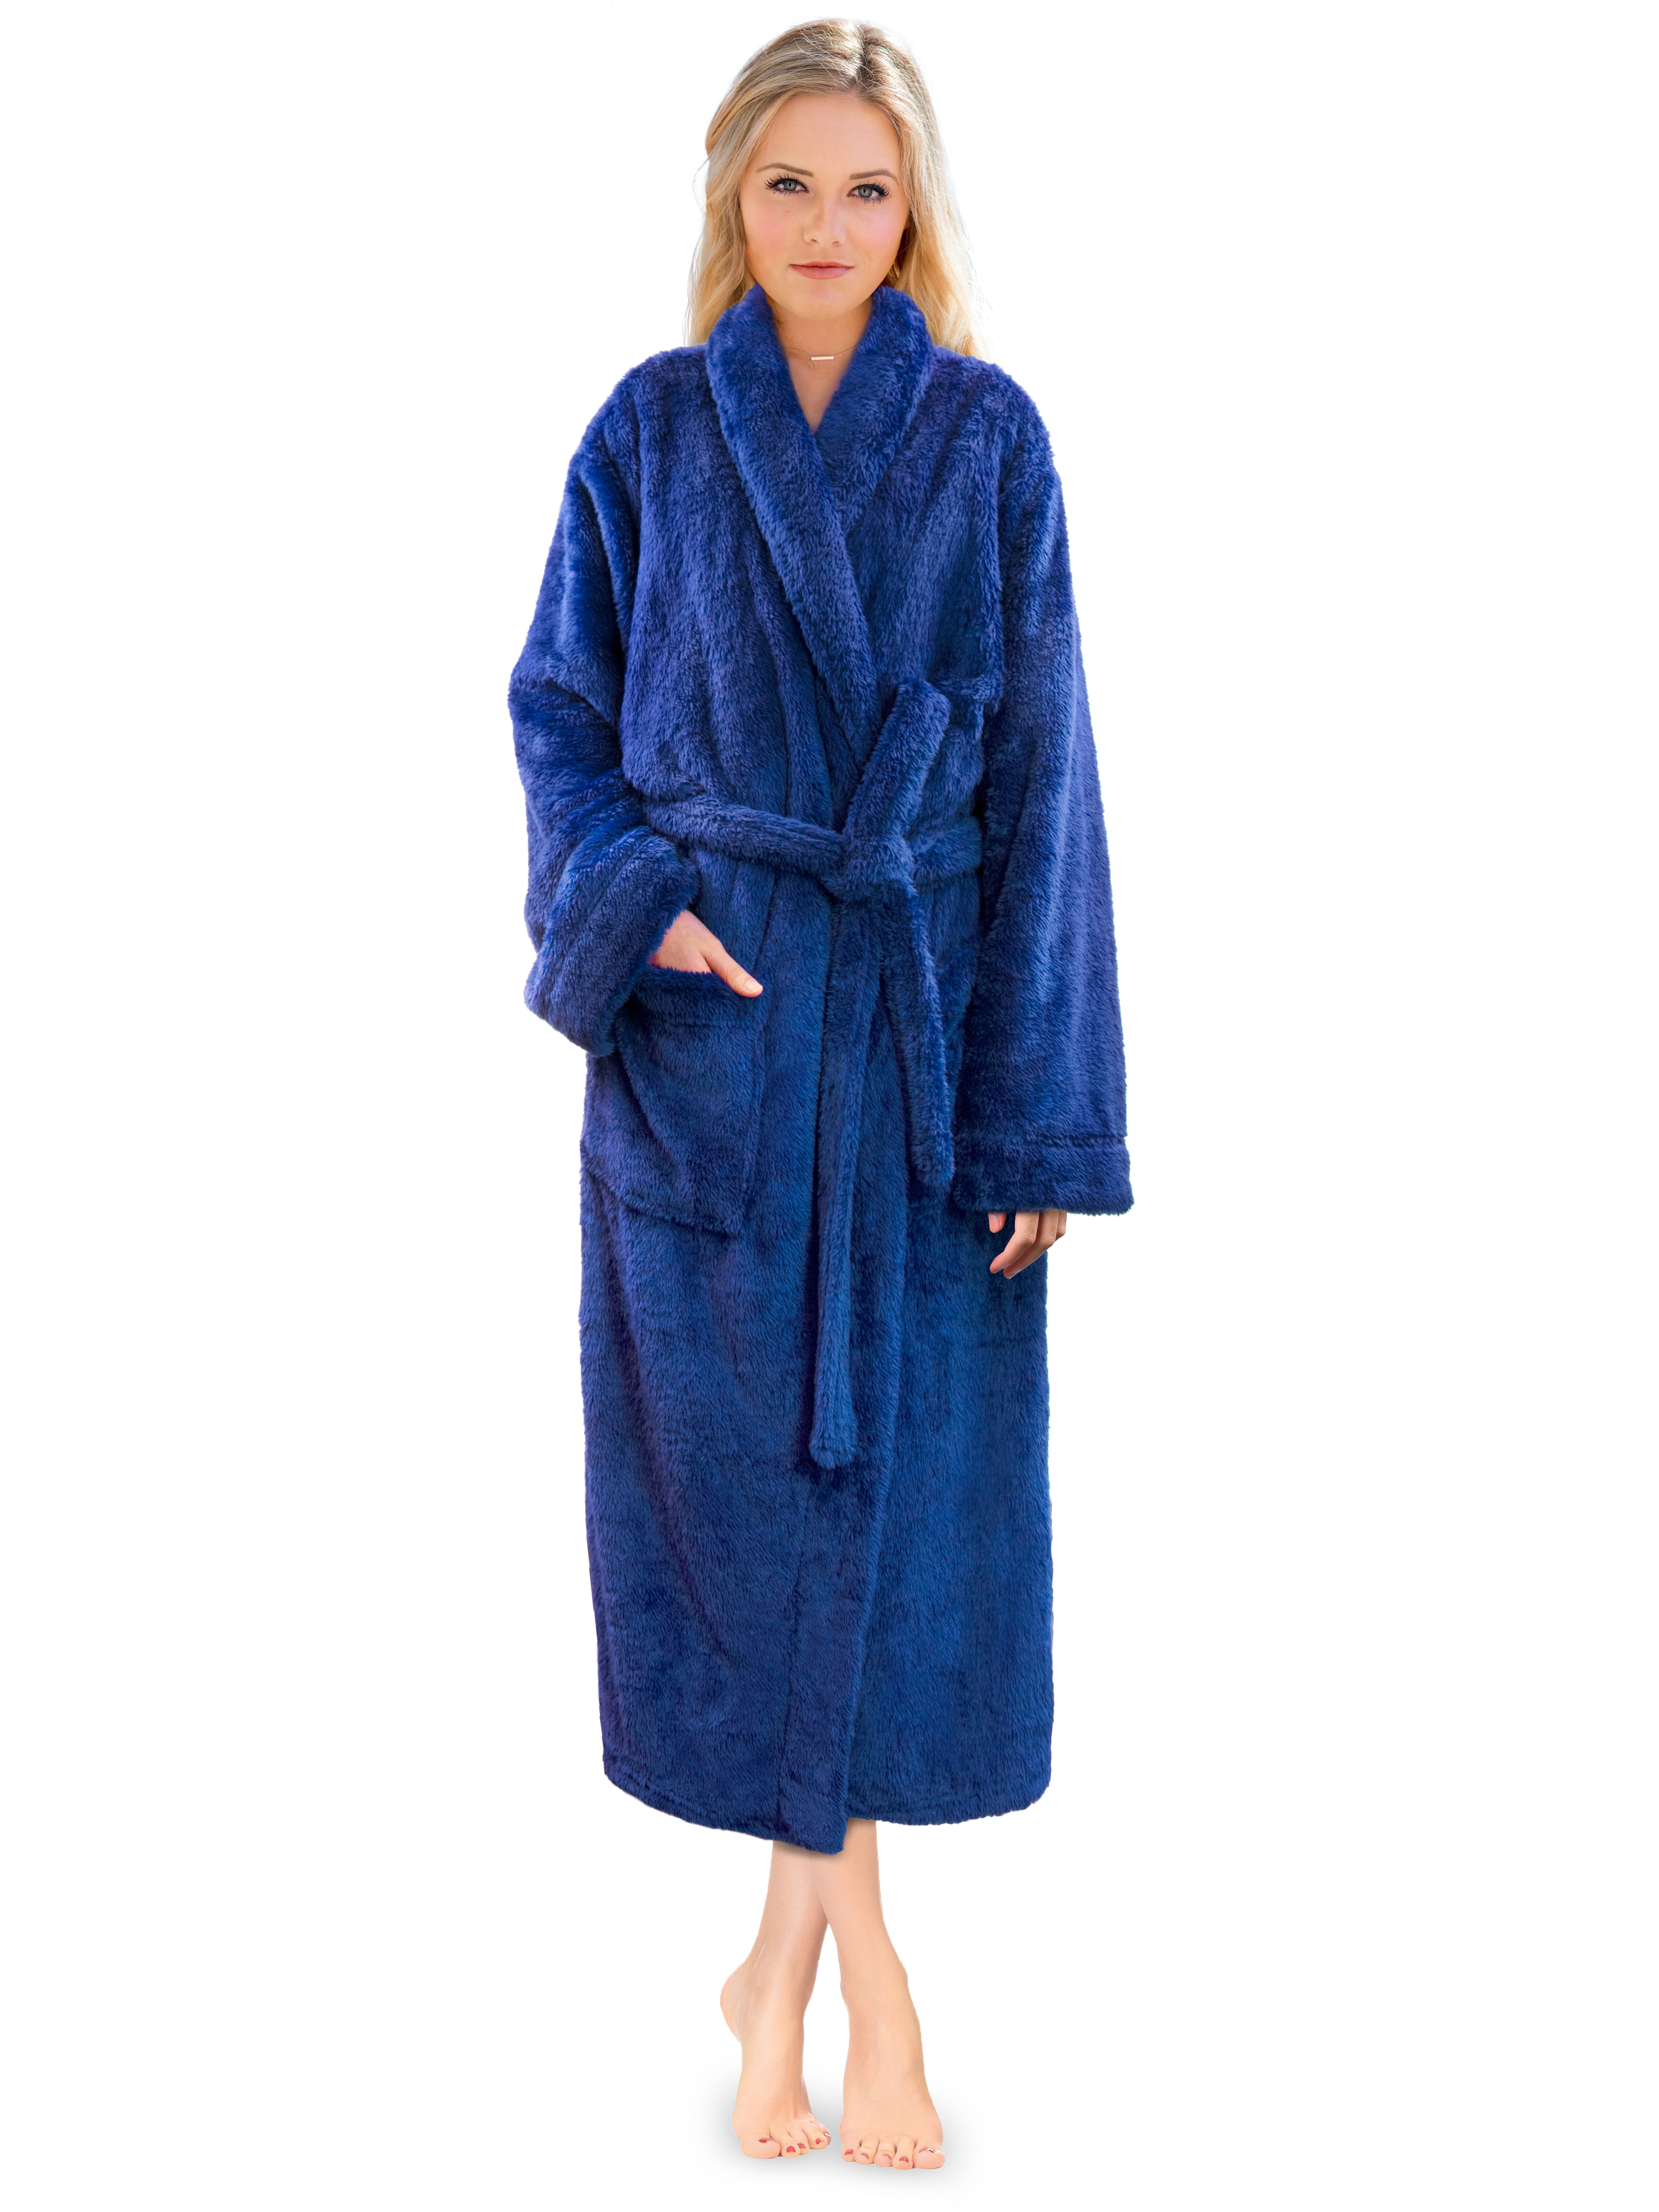 Women's Bath Robes & Housecoats, Fluffy Robes